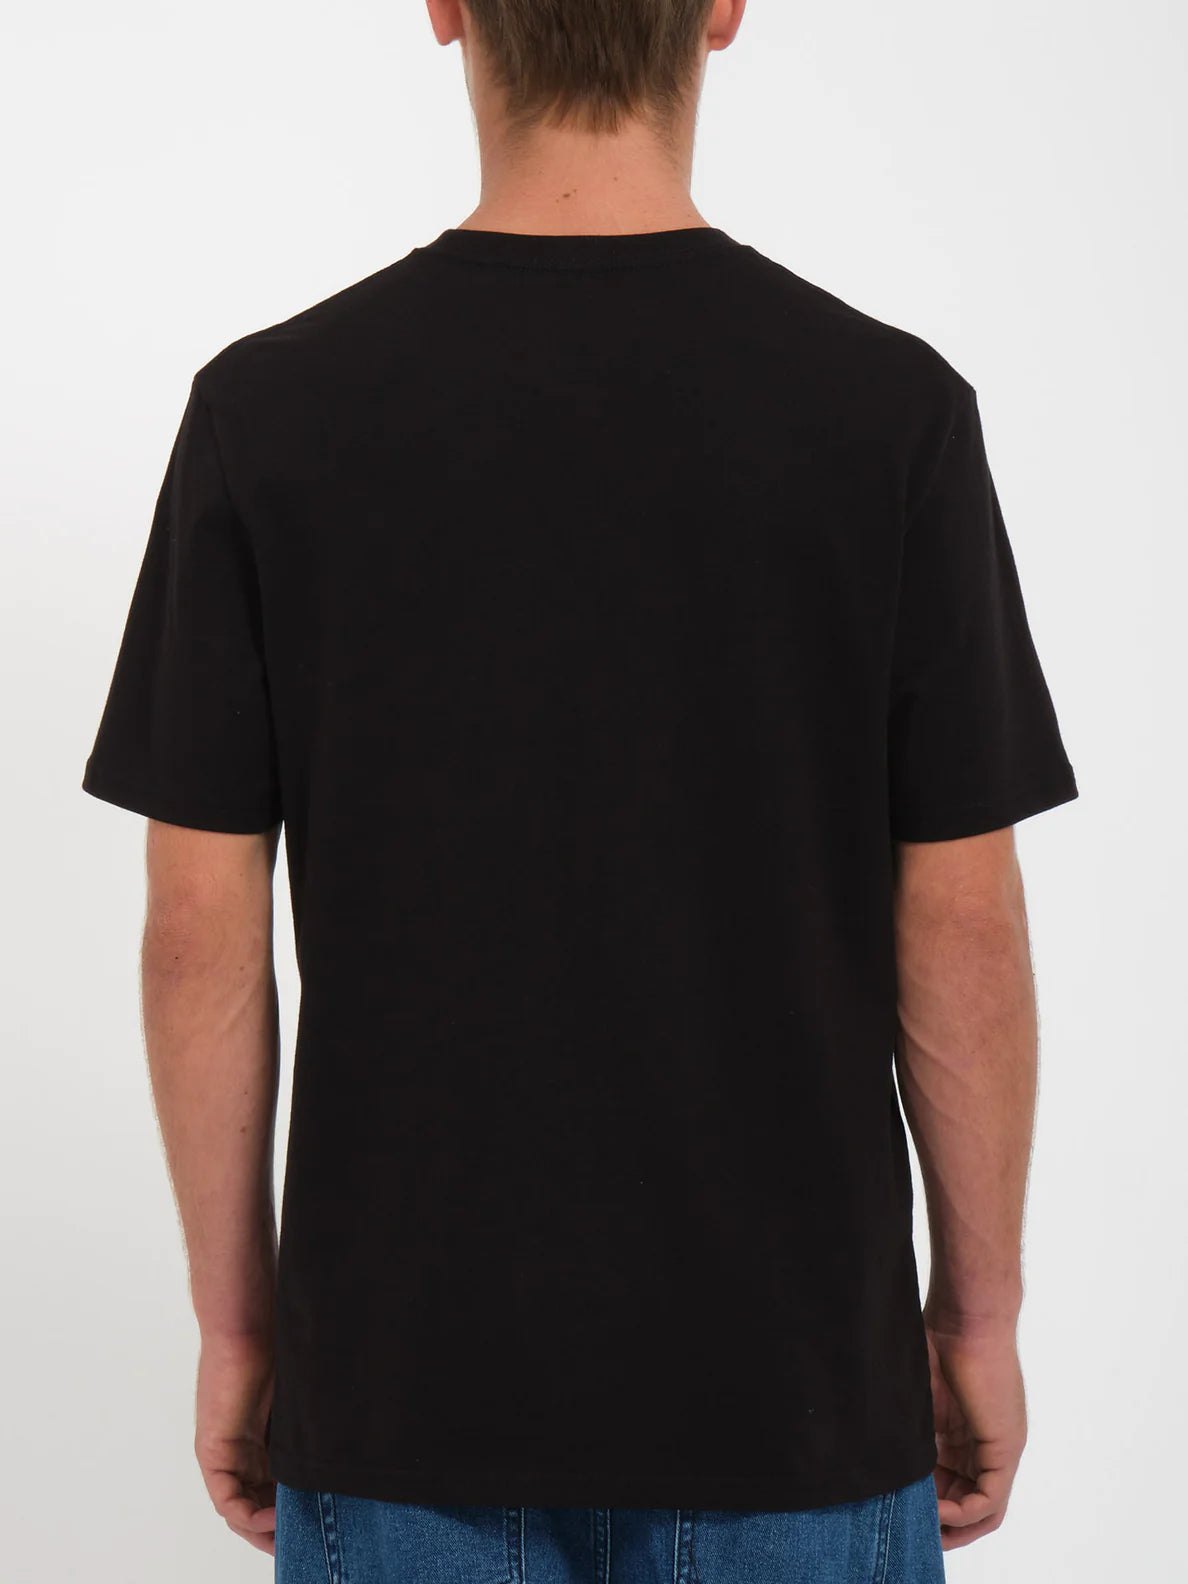 Camiseta Volcom Herbie - Black | Camisetas de hombre | Camisetas manga corta de hombre | Volcom Shop | surfdevils.com